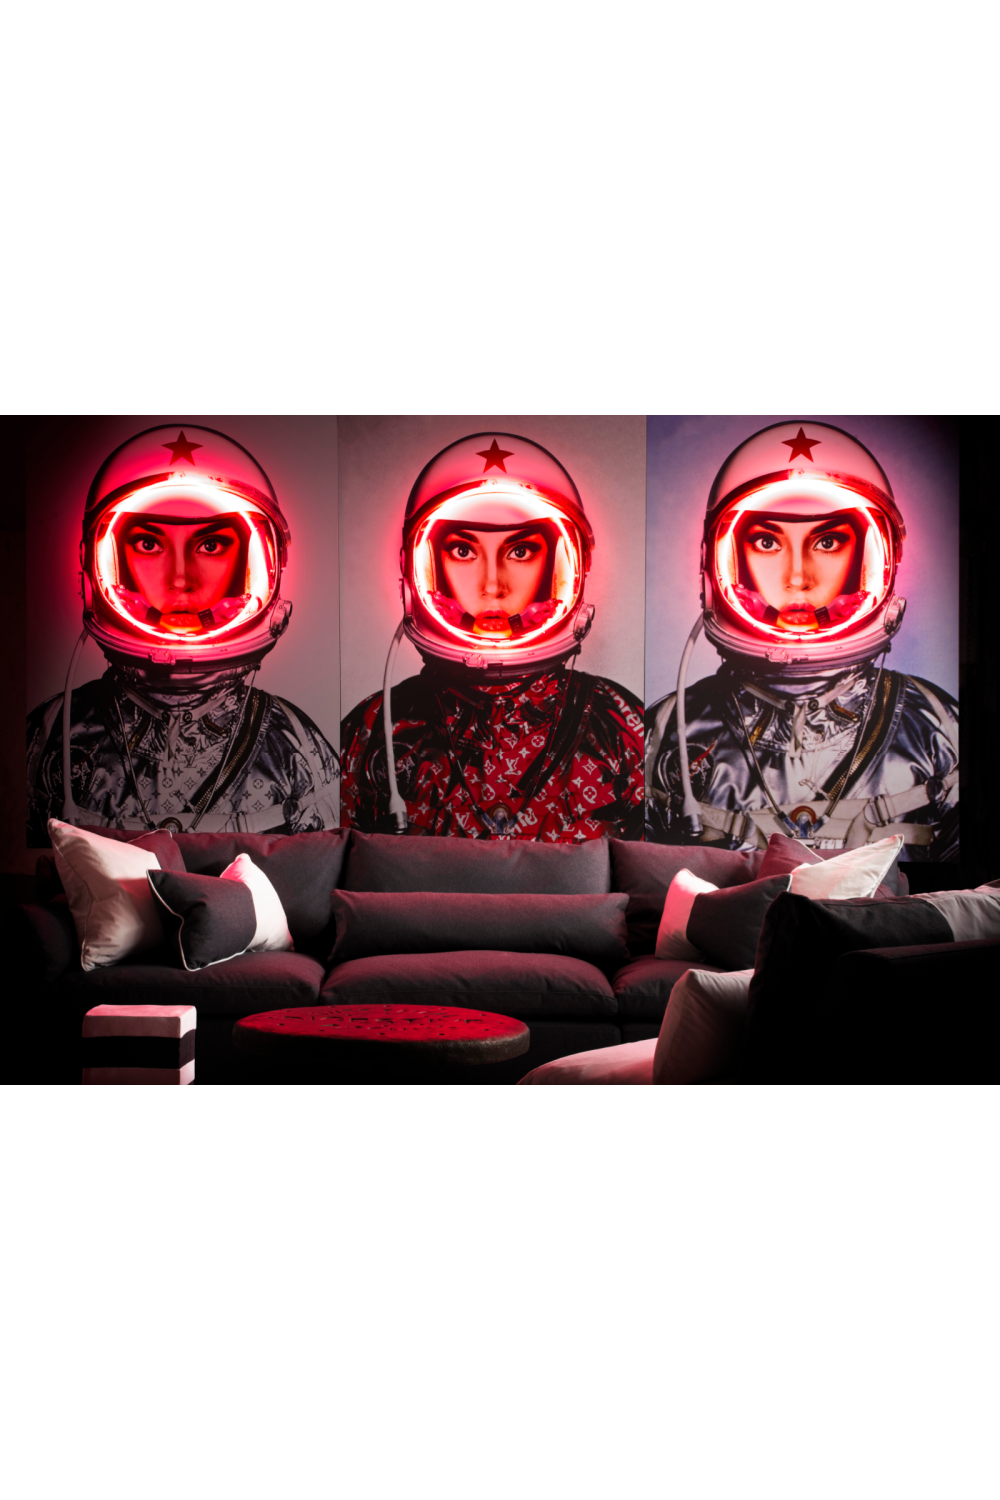 Red Louis Vuitton Neon Artwork - Andrew Martin Space Girl Logos | OROATRADE 31 x 47